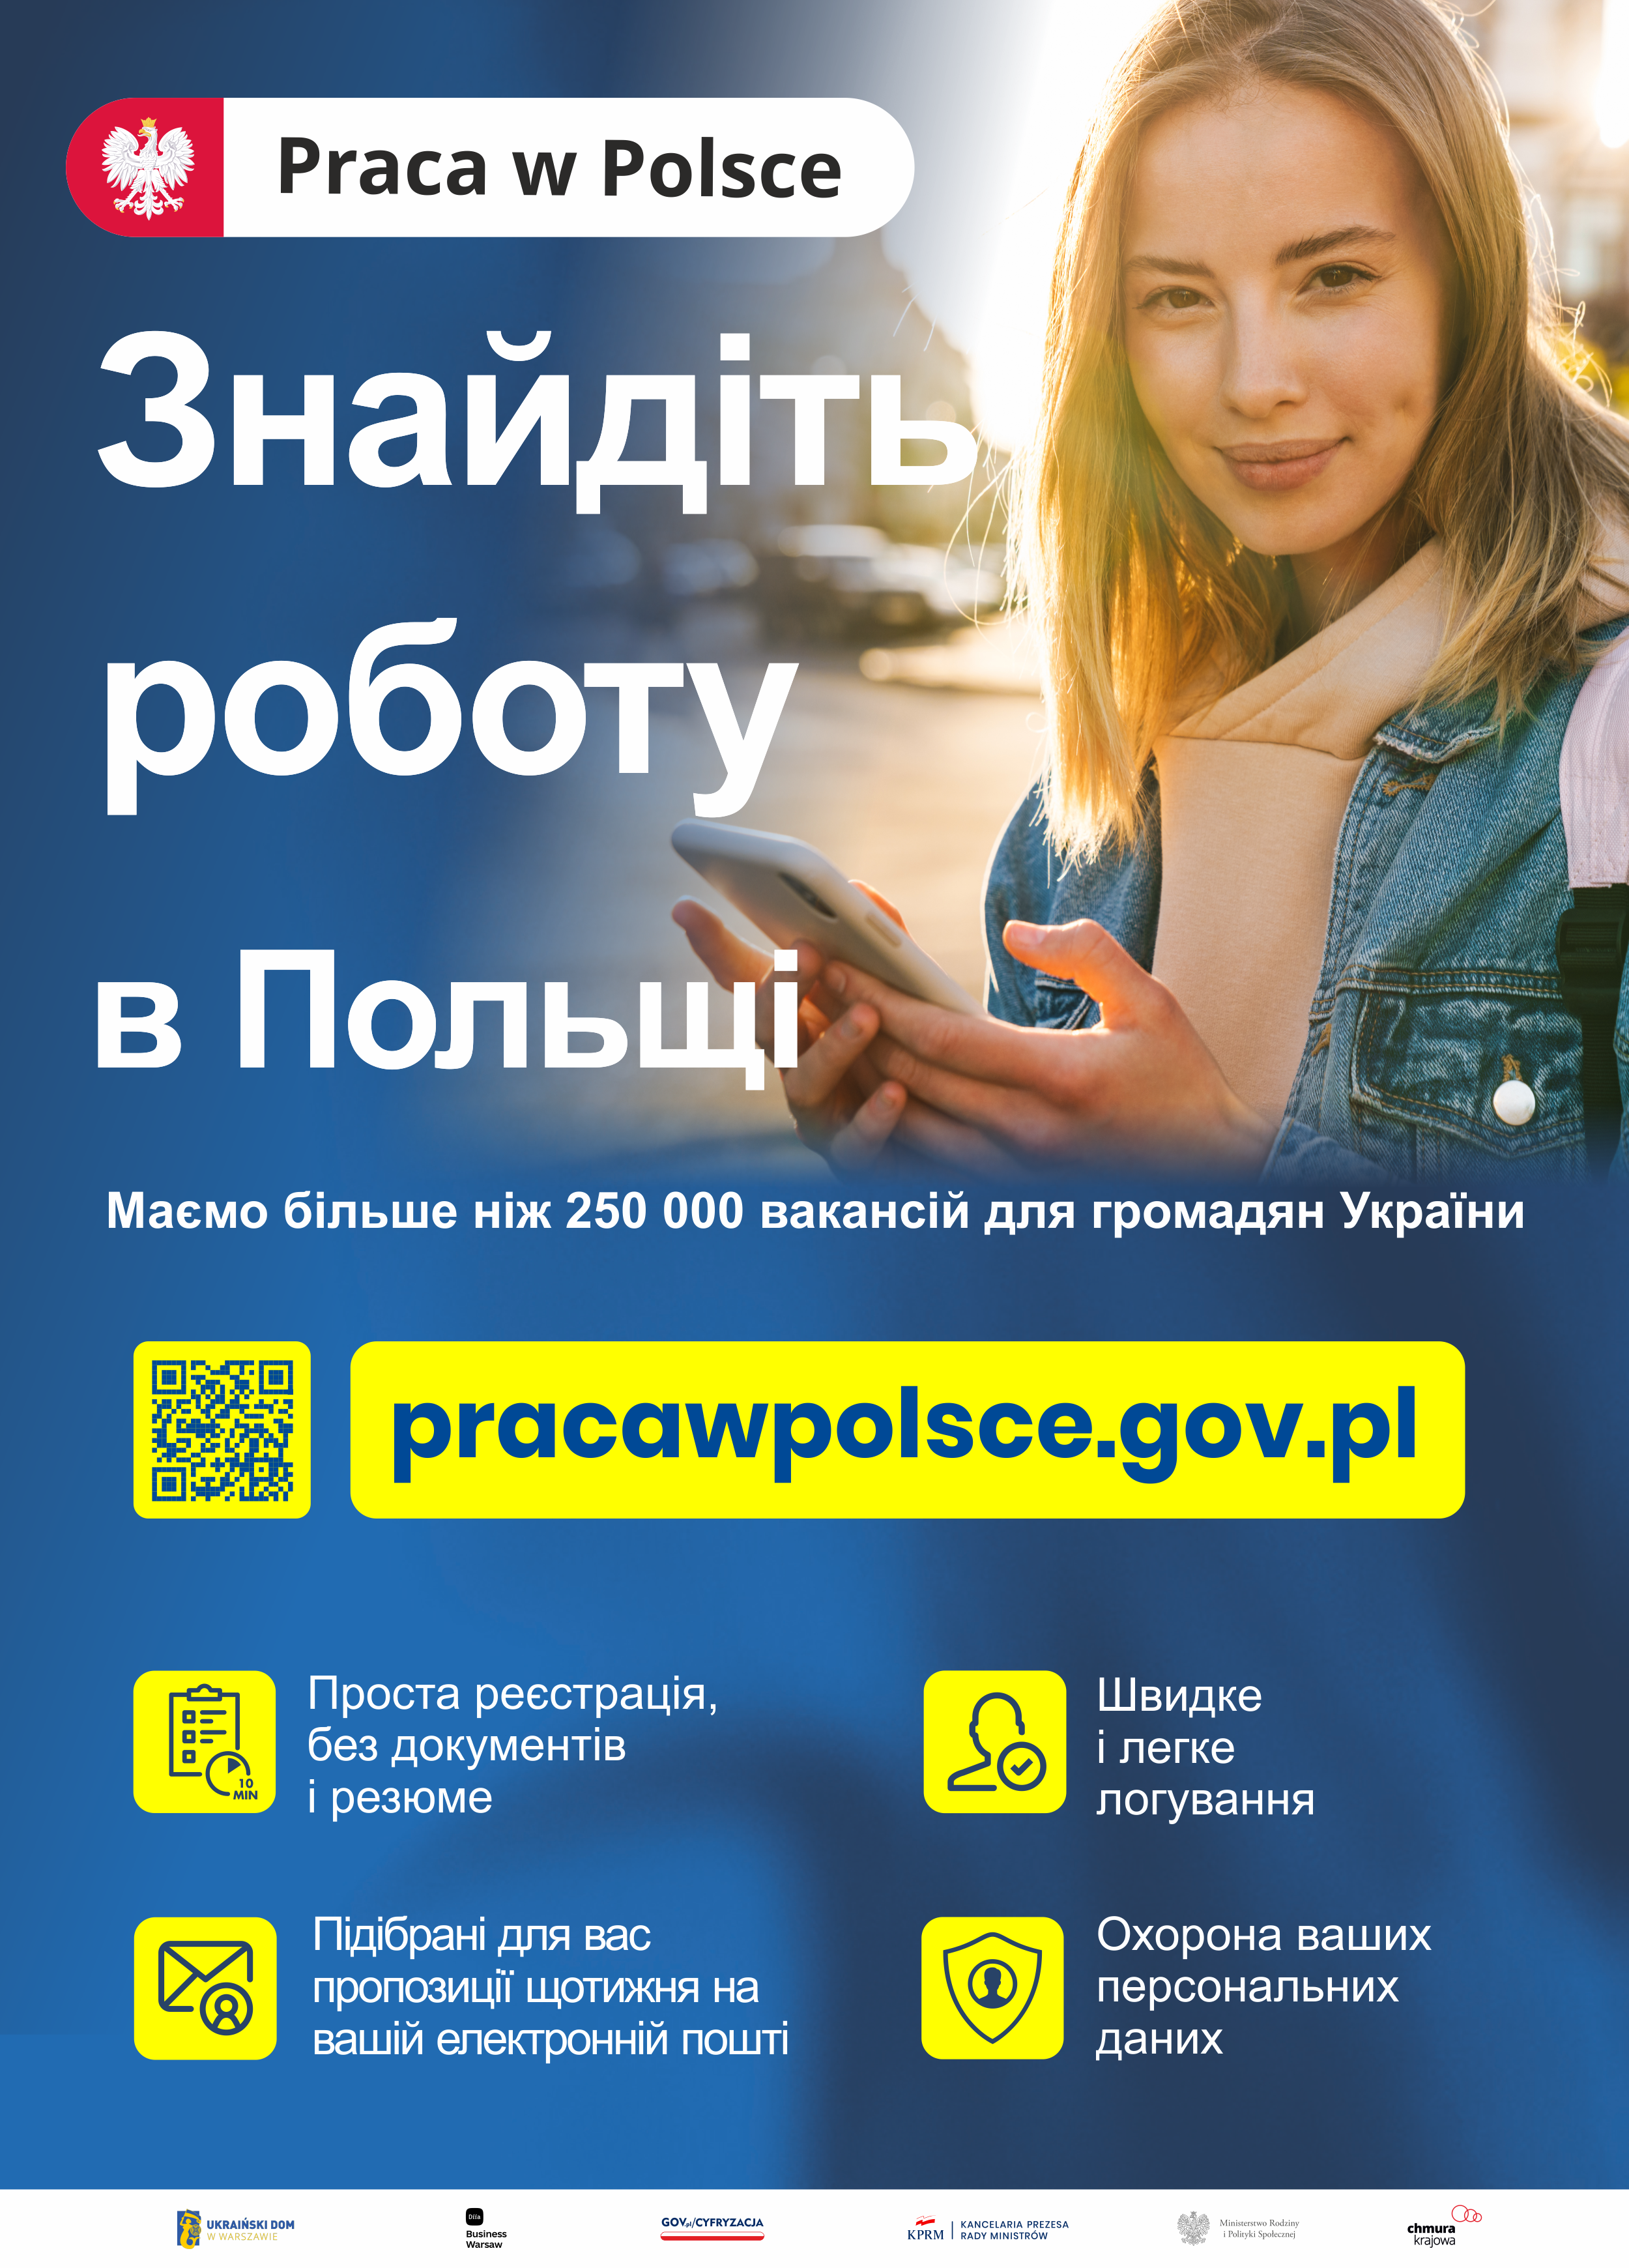 Reklama projektu praca w Polsce. www.pracawpolsce.gov.pl